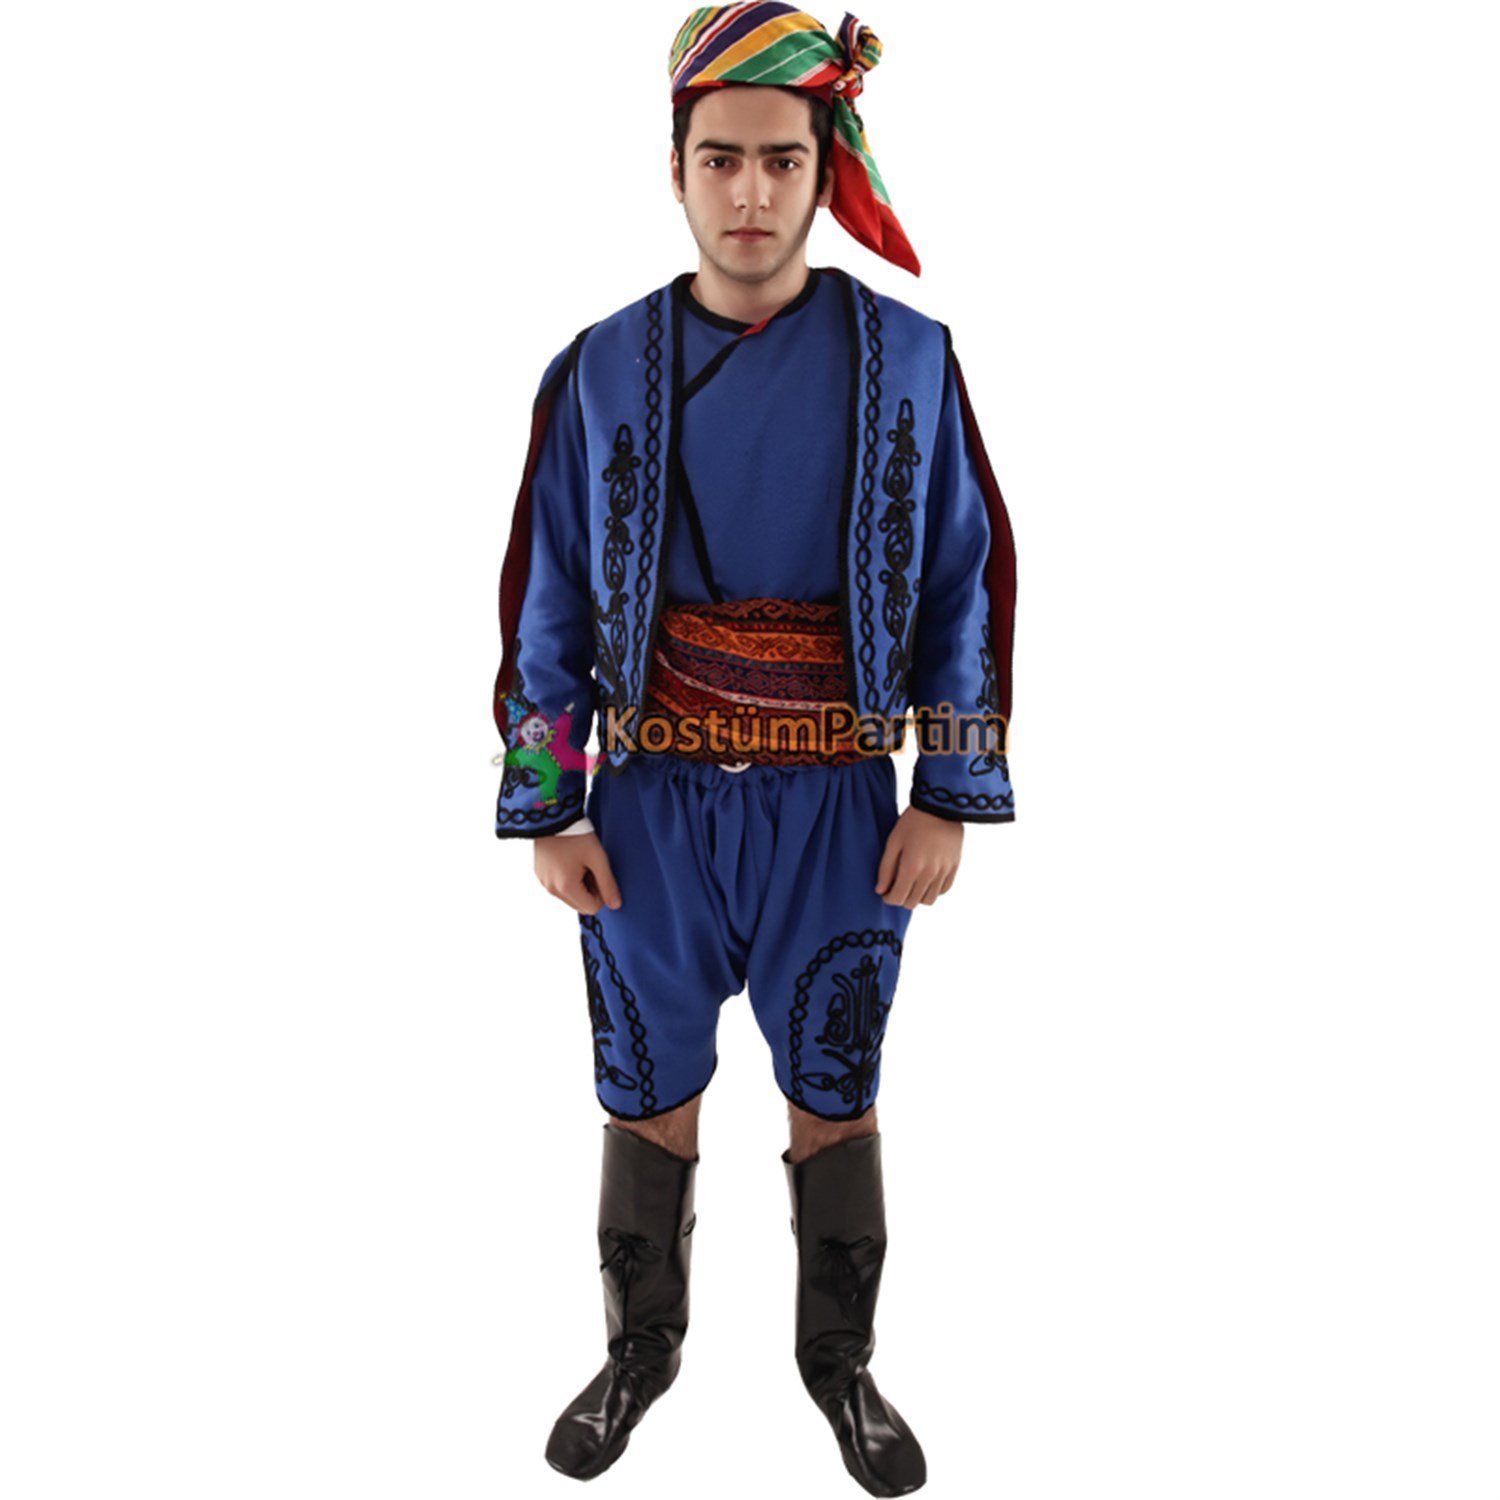 Zeybek Efe Kostümü Yetişkin Erkek Kıyafeti Uygun Fiyatlı Model -  KostümPartim®